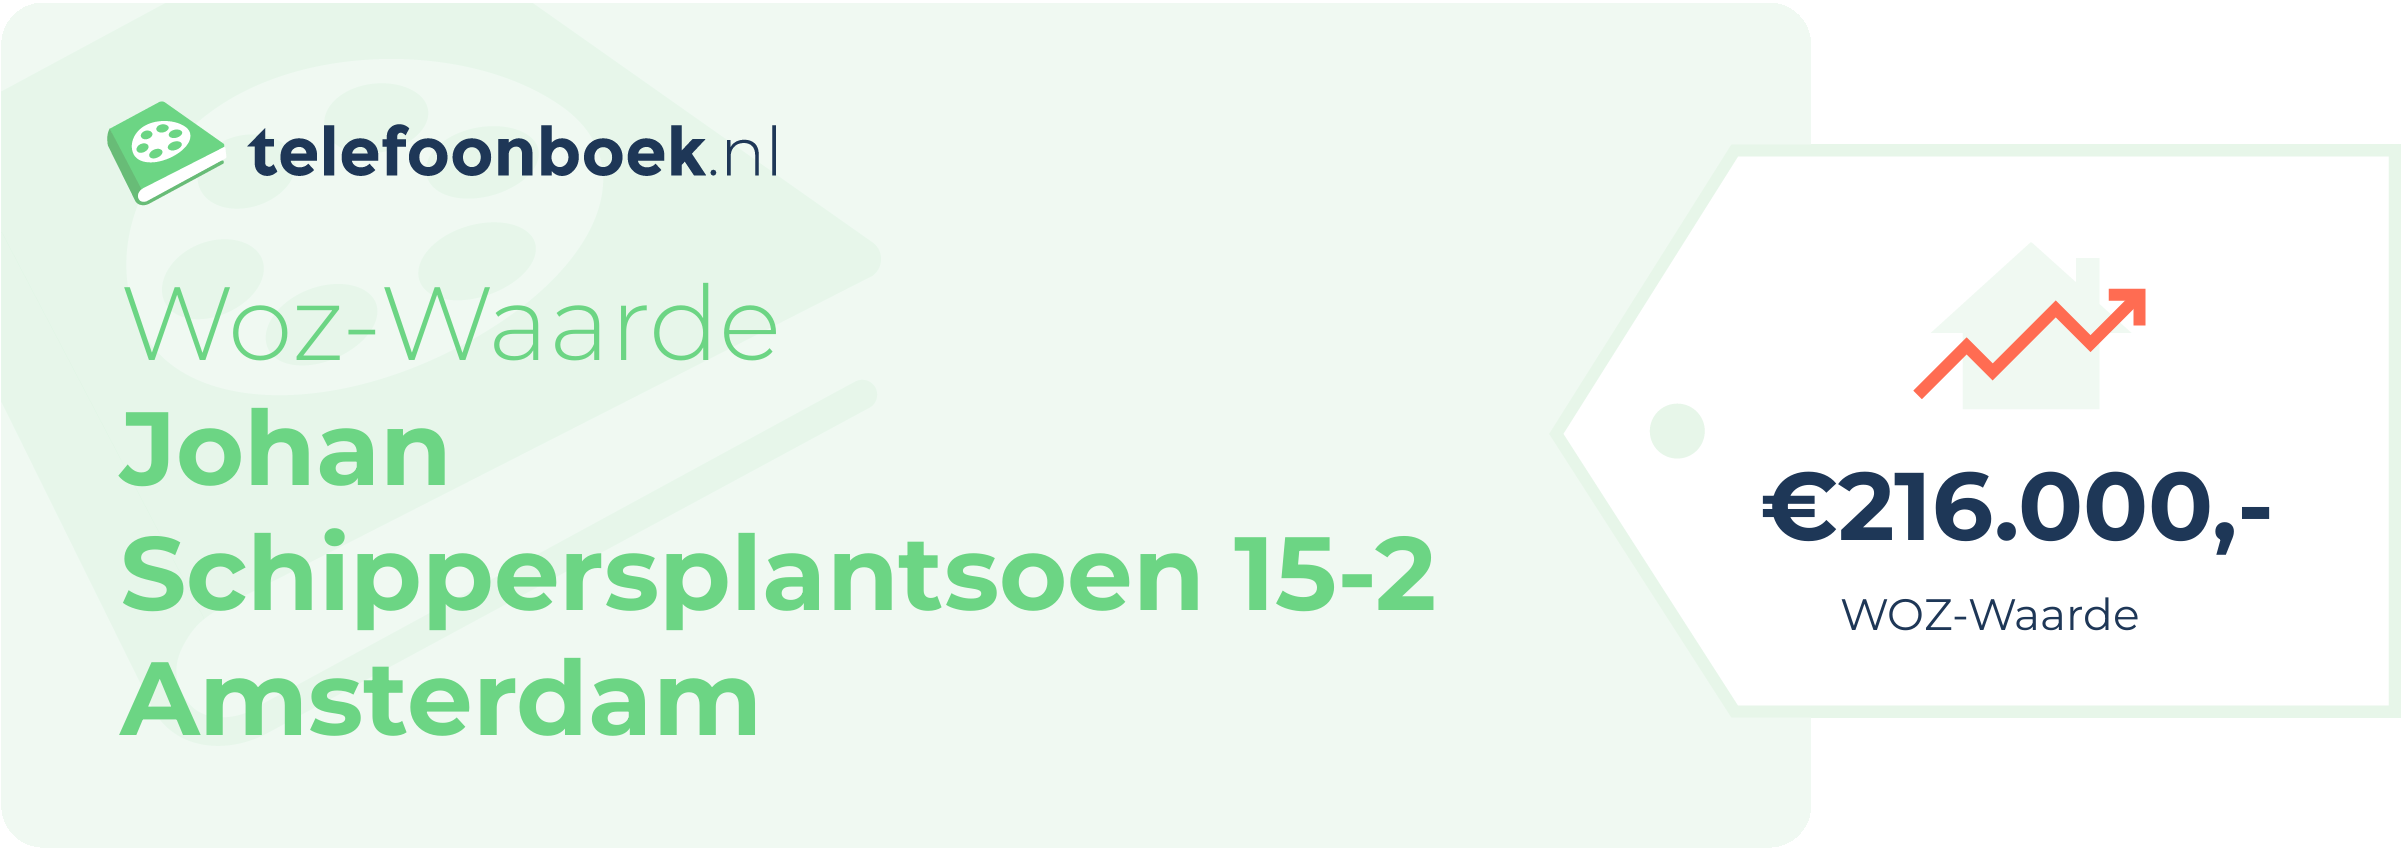 WOZ-waarde Johan Schippersplantsoen 15-2 Amsterdam